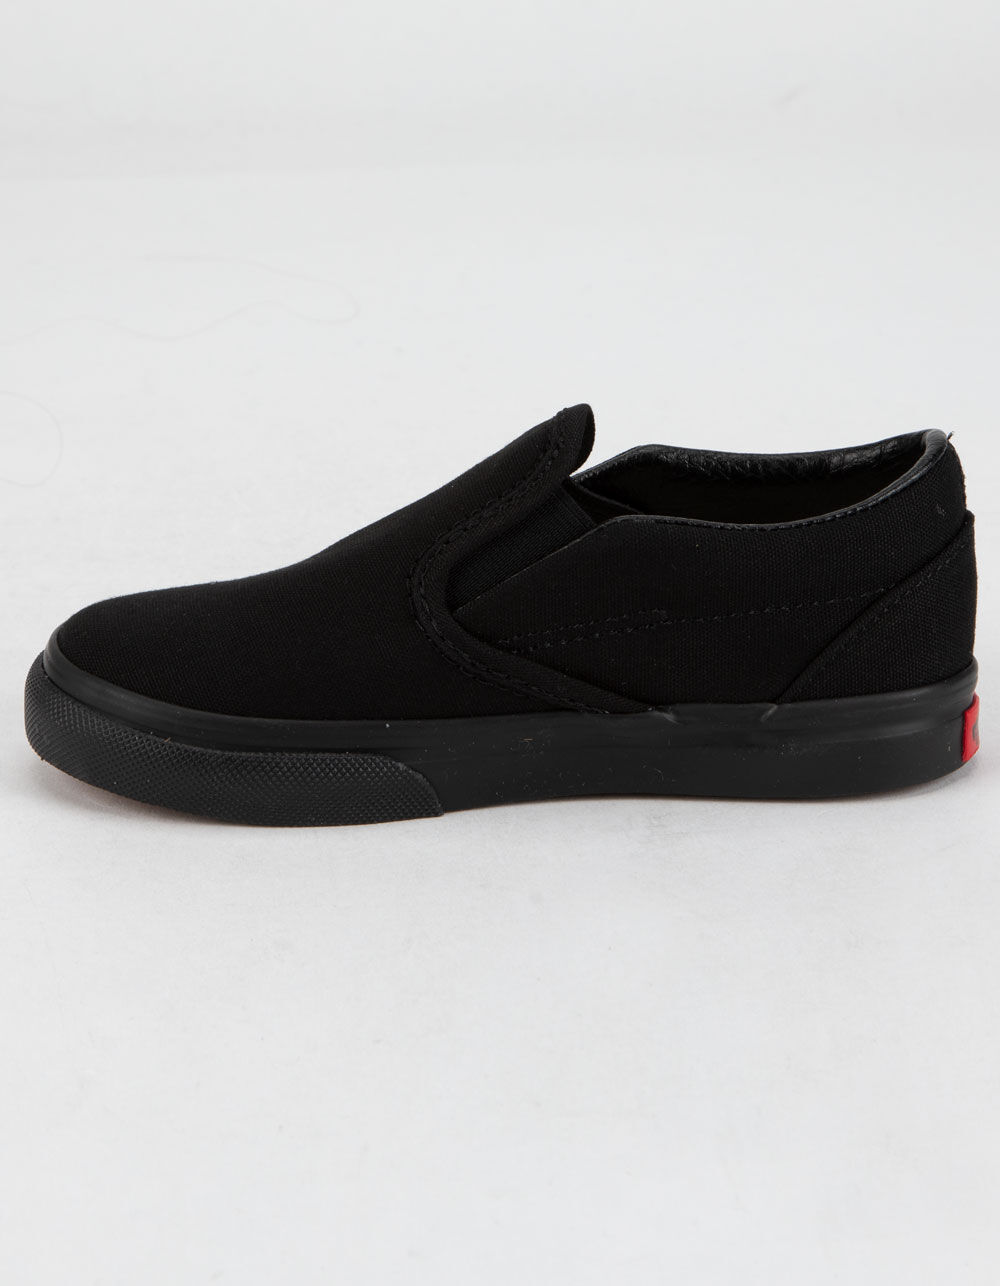 VANS Toddler Classic Slip-On Black Shoes - BLK/BLK | Tillys